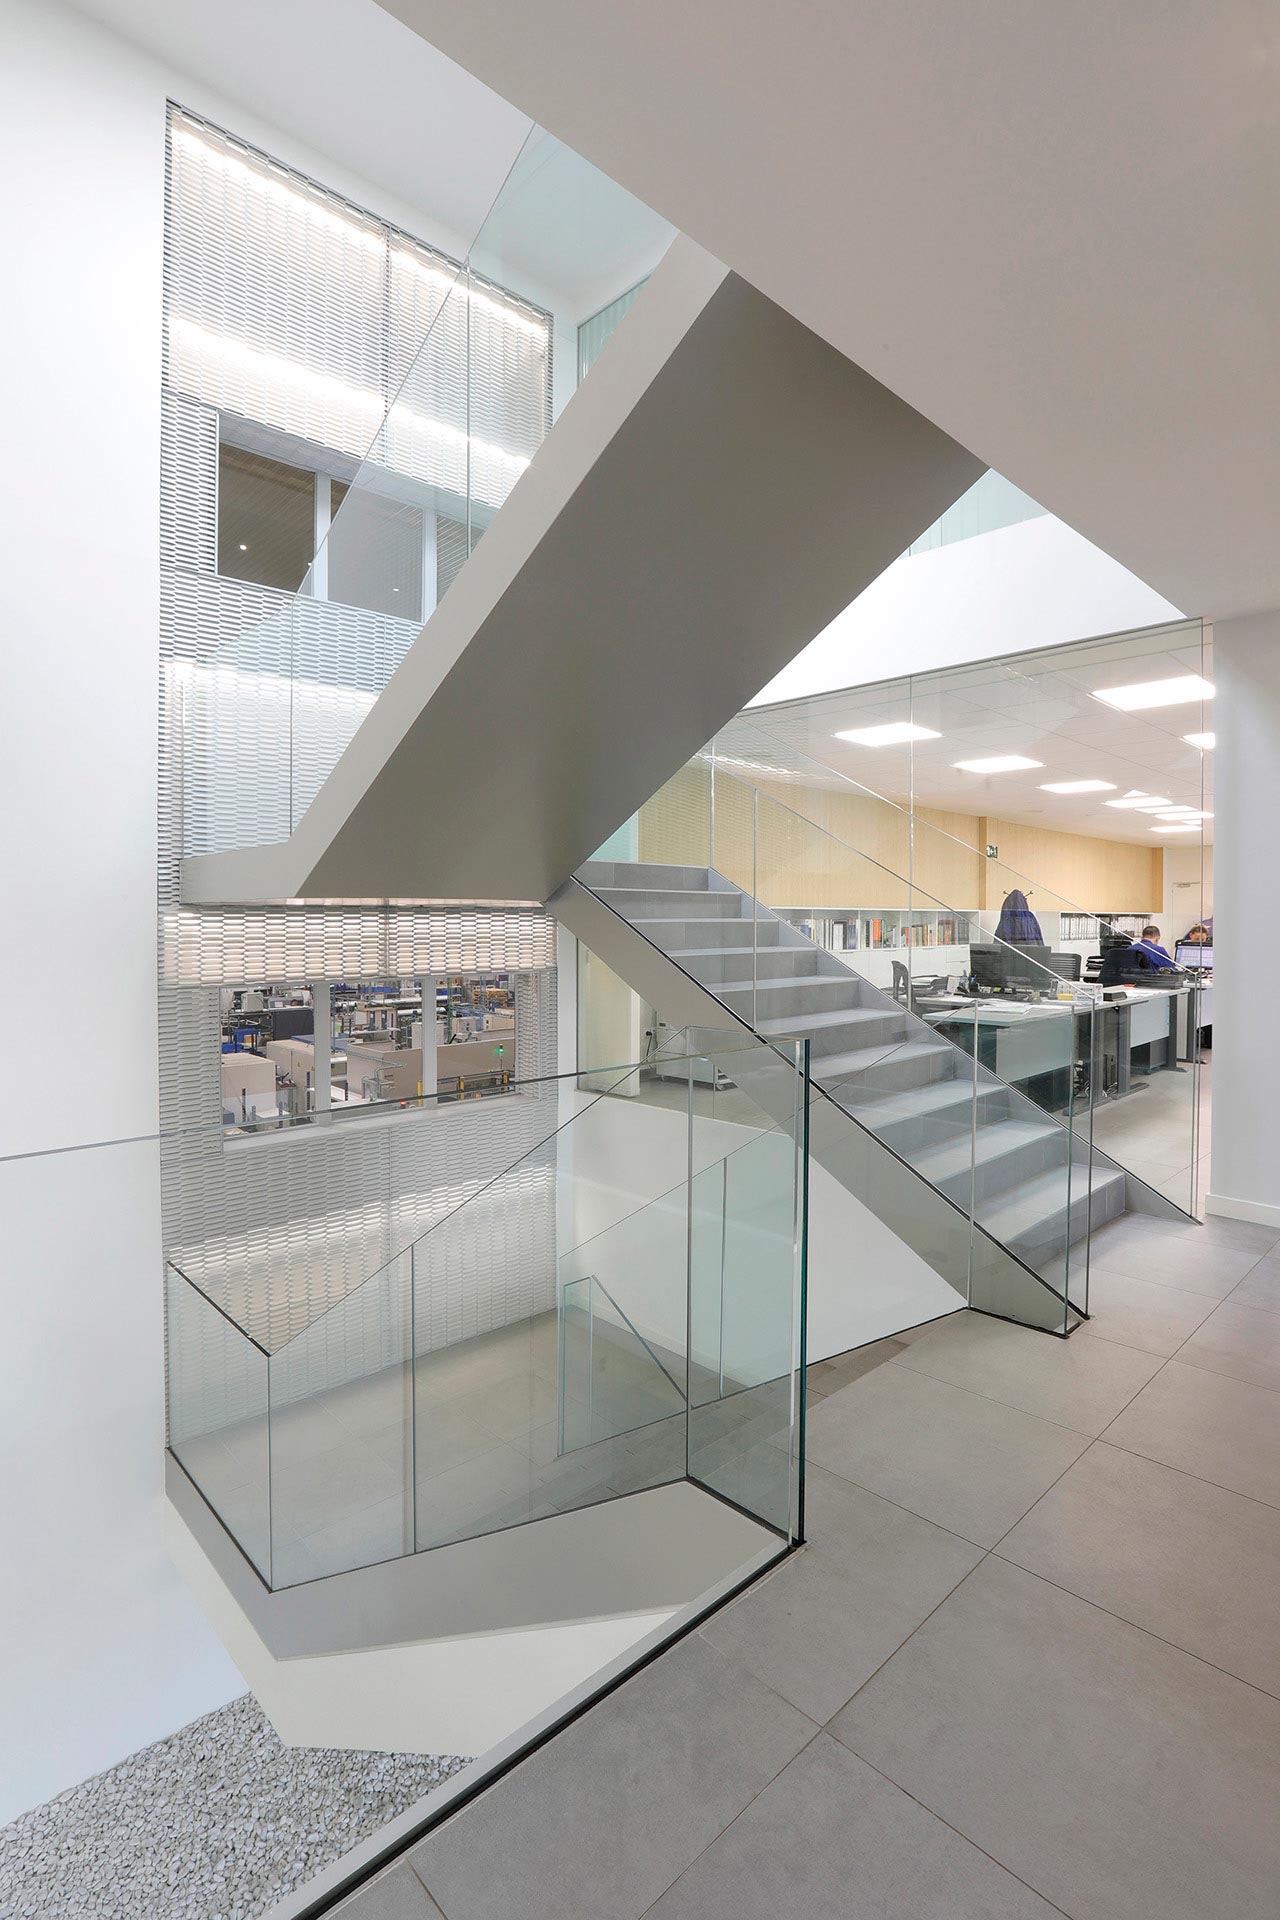 Escalera en triple altura en reforma de oficina de diseño diseñada por Moah Diseñadores de Interiores en Cantabria